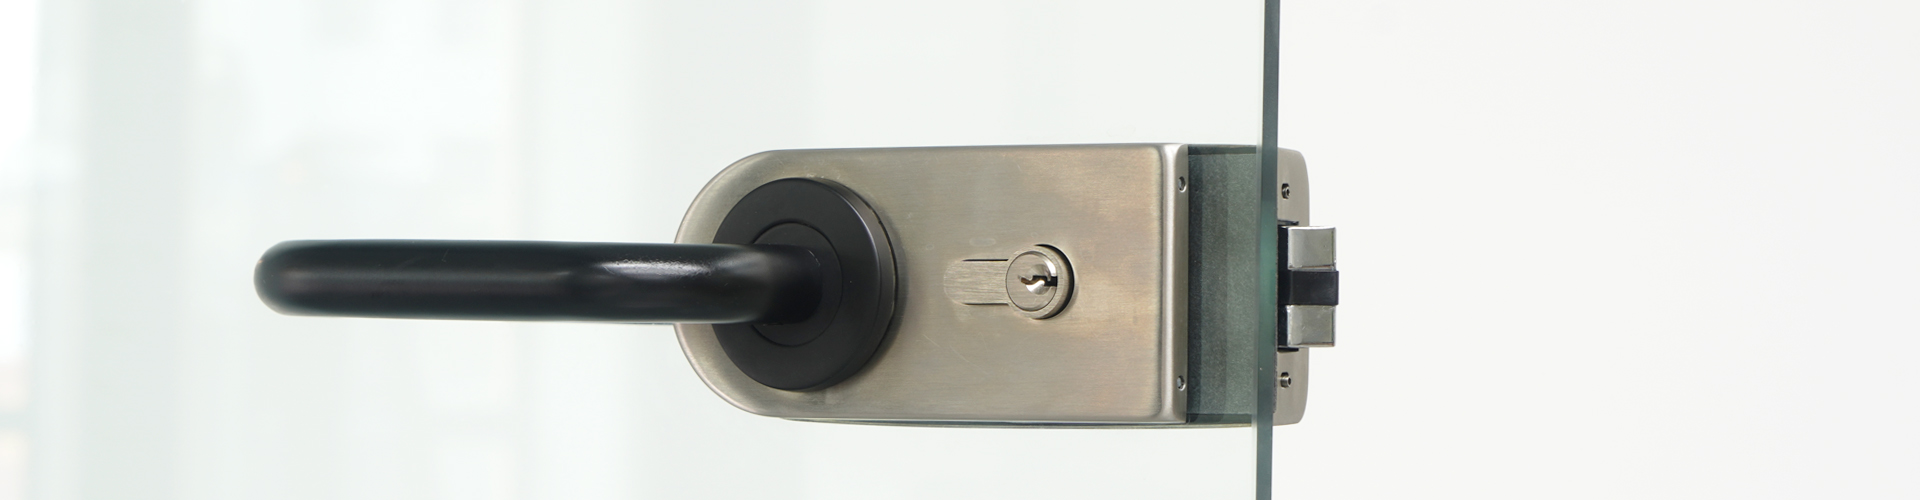 sliding glass door handle with lock